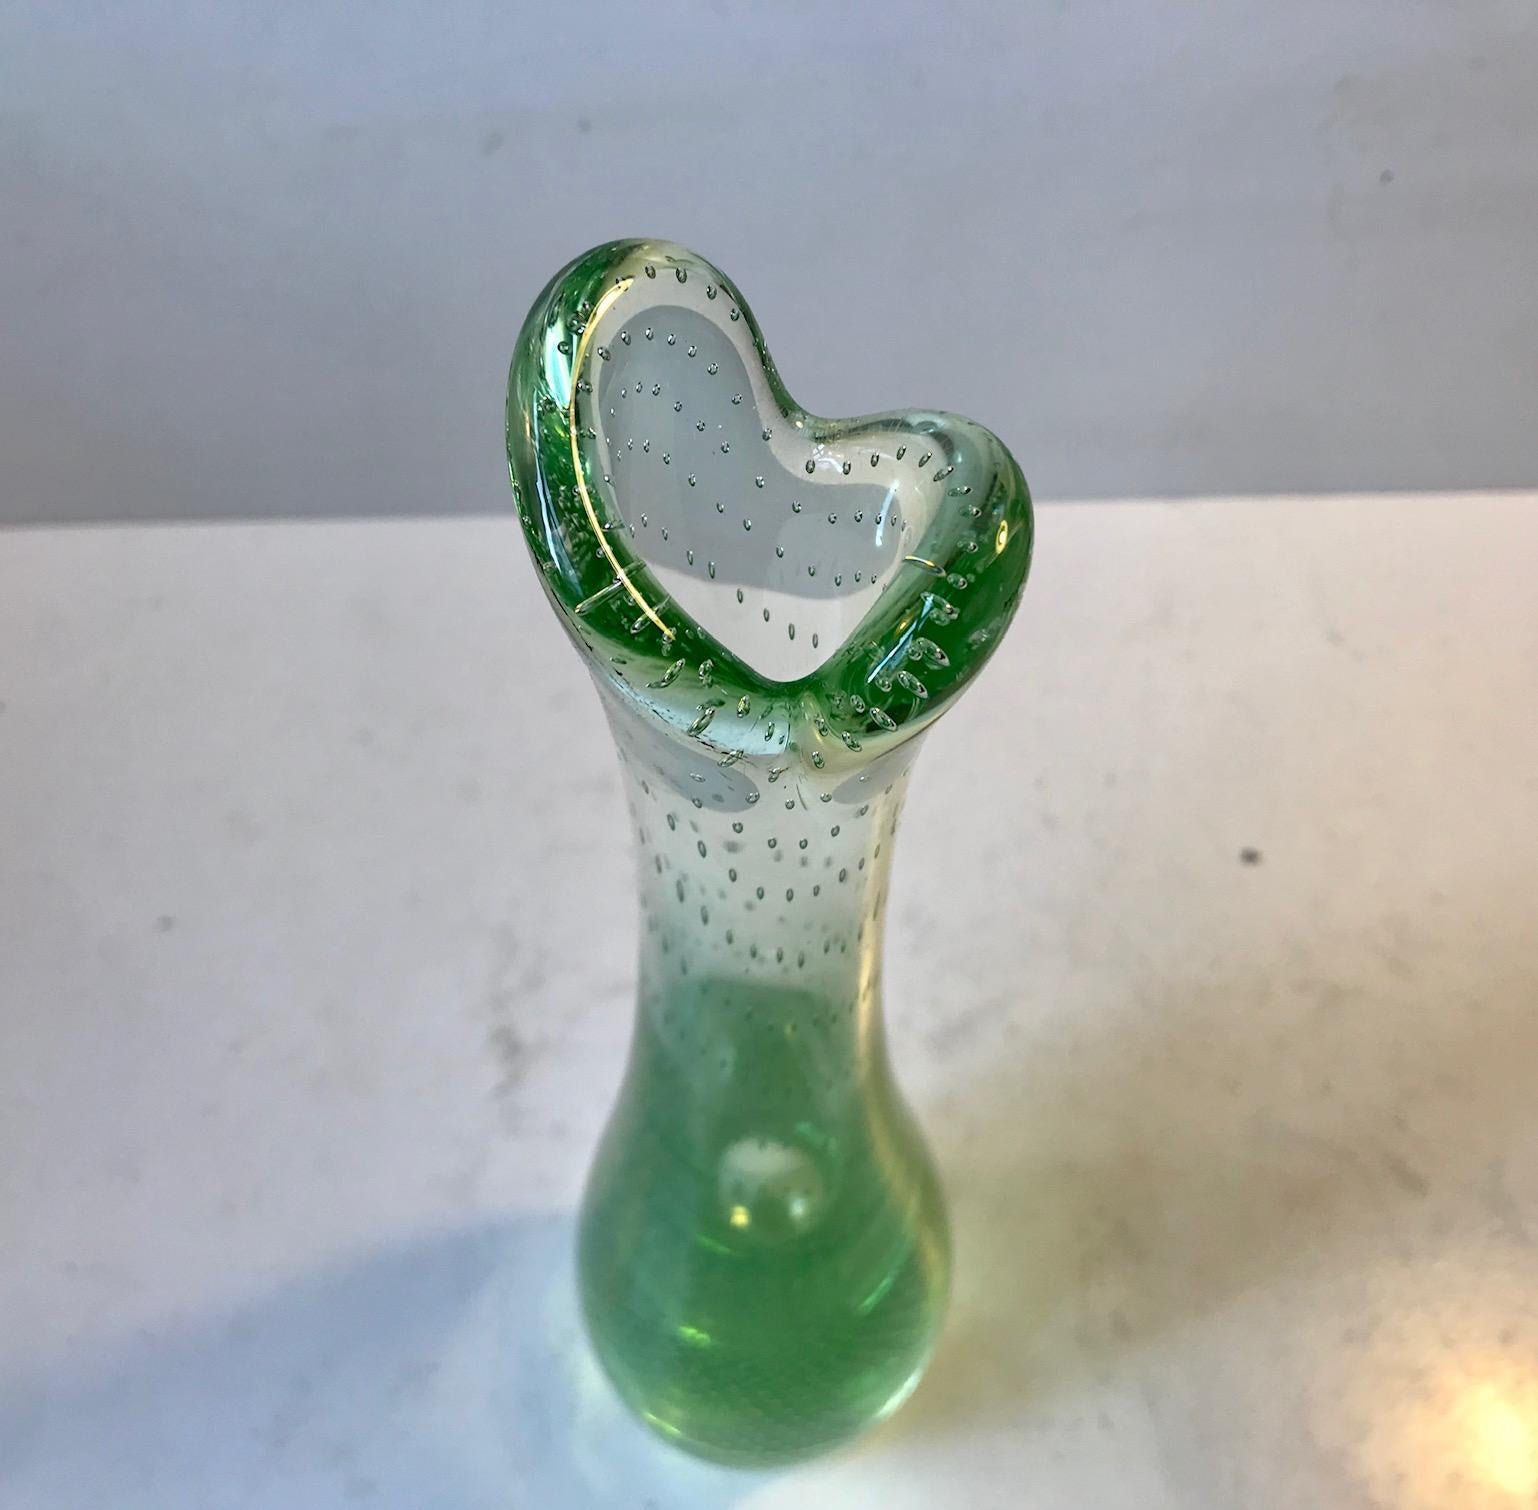 Grand vase en verre soufflé à la main, de forme organique, avec des bulles d'air contrôlées et le sommet dit 